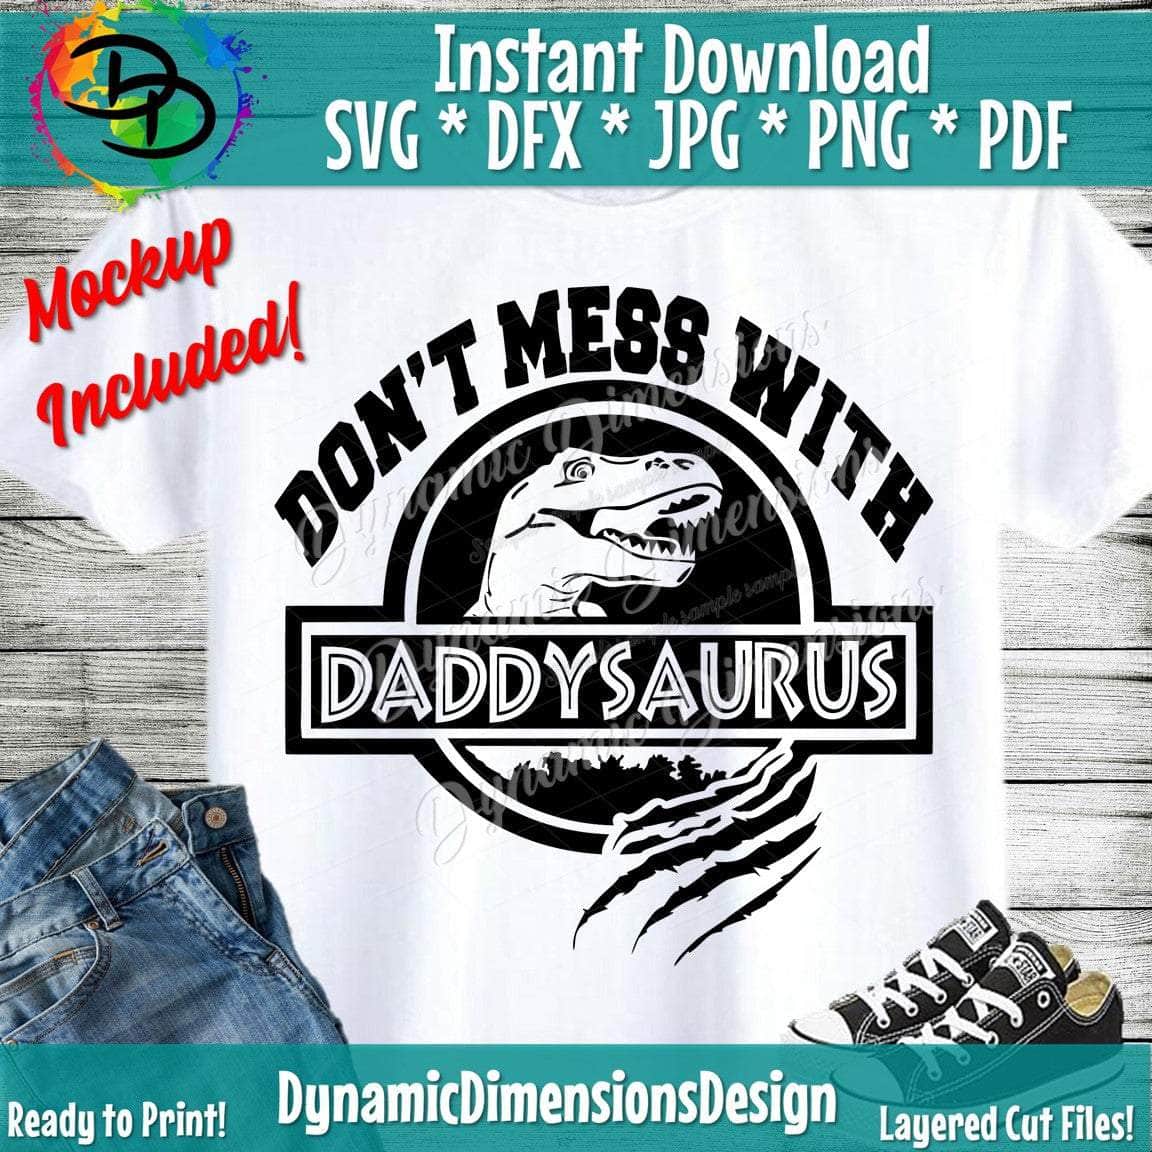 Daddysaurus